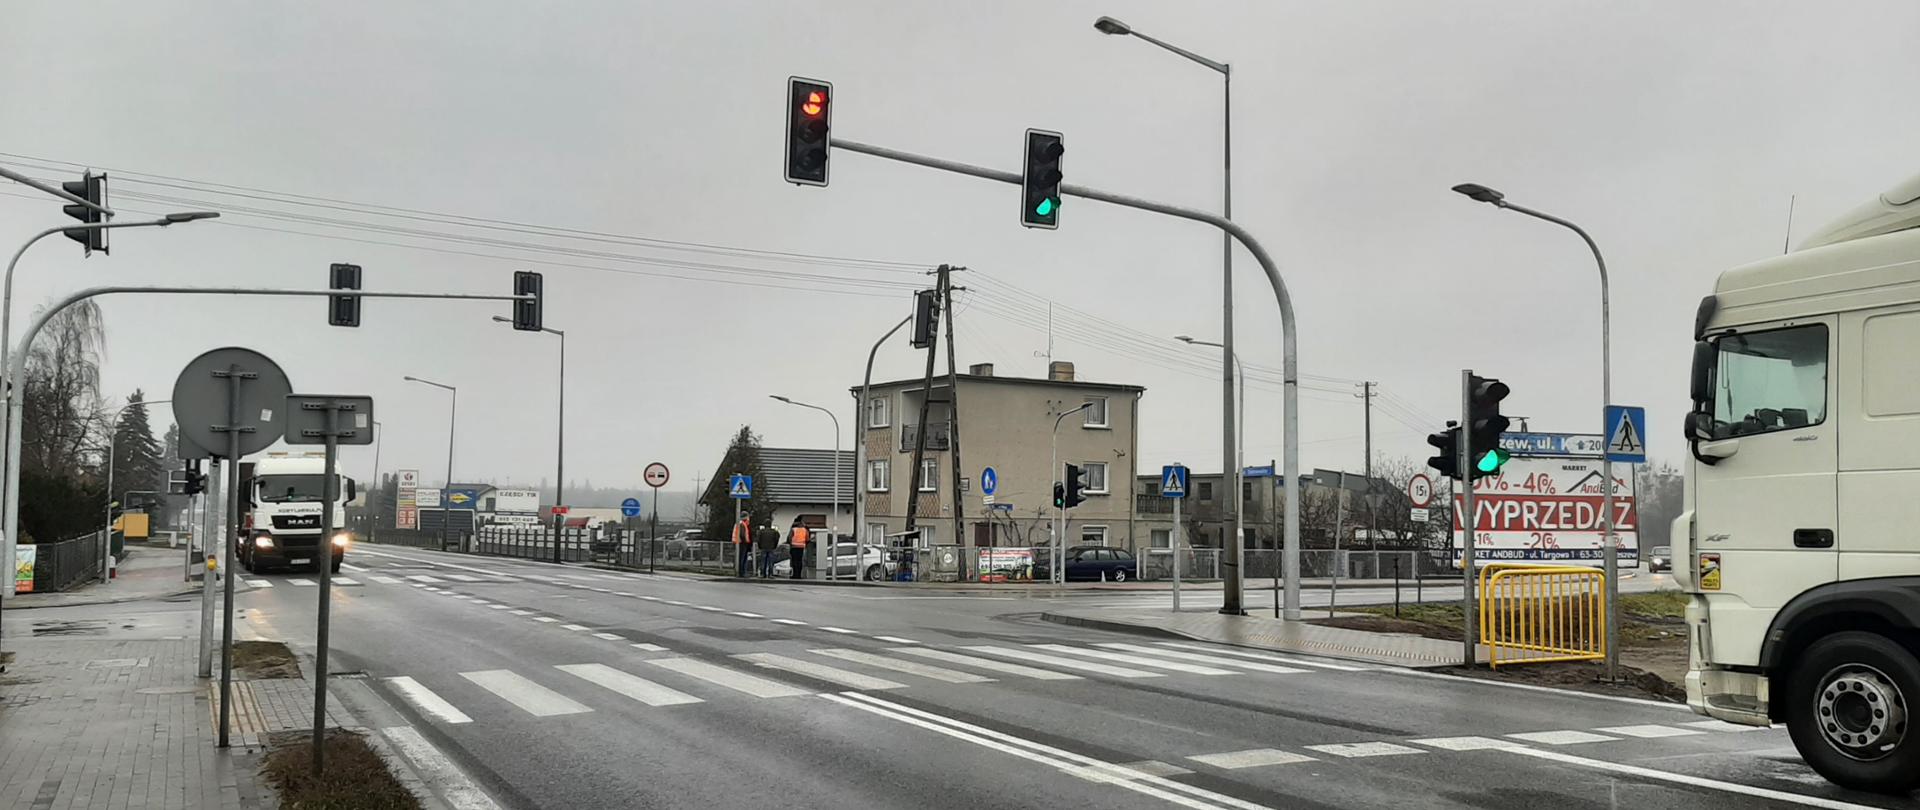 Skrzyżowanie drogi krajowej nr 11 z drogami gminnymi w miejscowości Zielona Łąka. Widoczne samochody i zabudowania jednorodzinne.